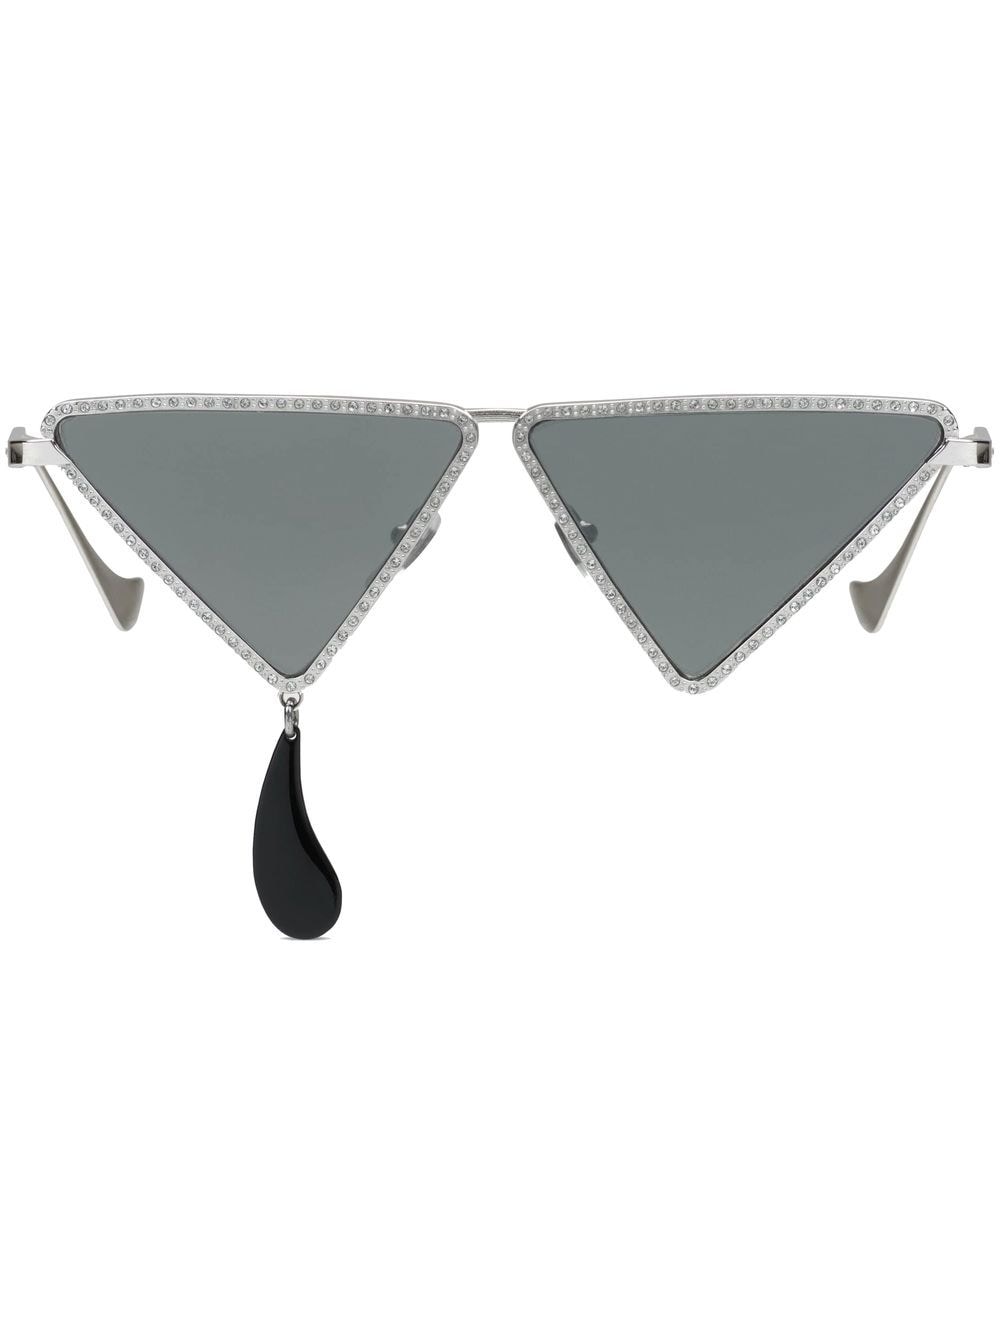 Gucci Eyewear rhinestone-embellished geometric sunglasses - Grey von Gucci Eyewear